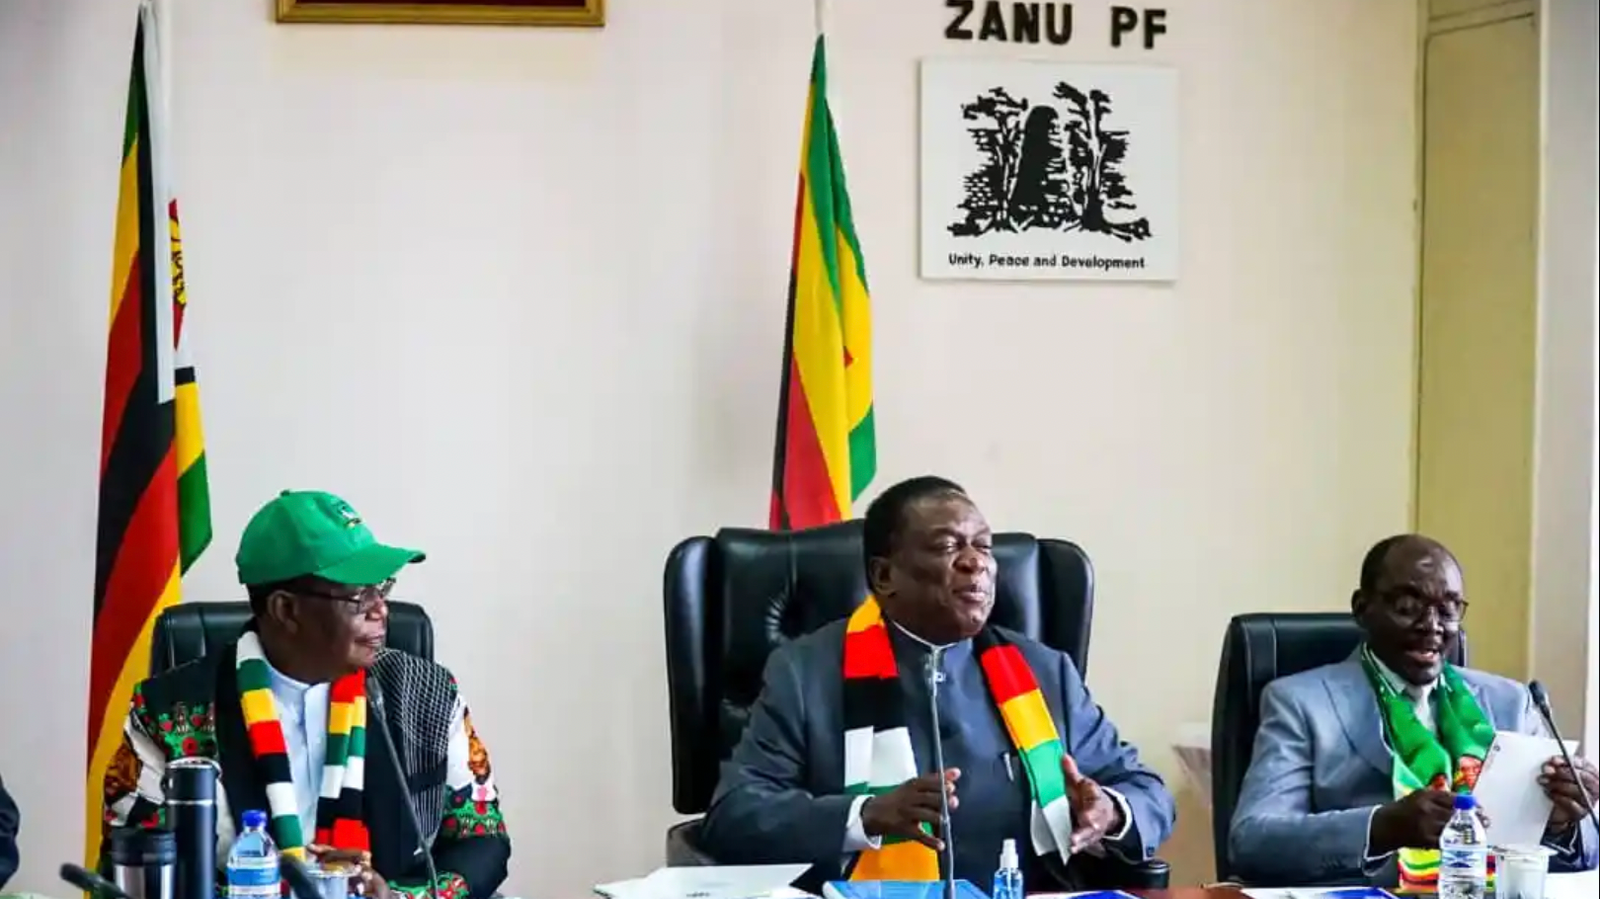 Zimbabwe ZANU PF politiburo